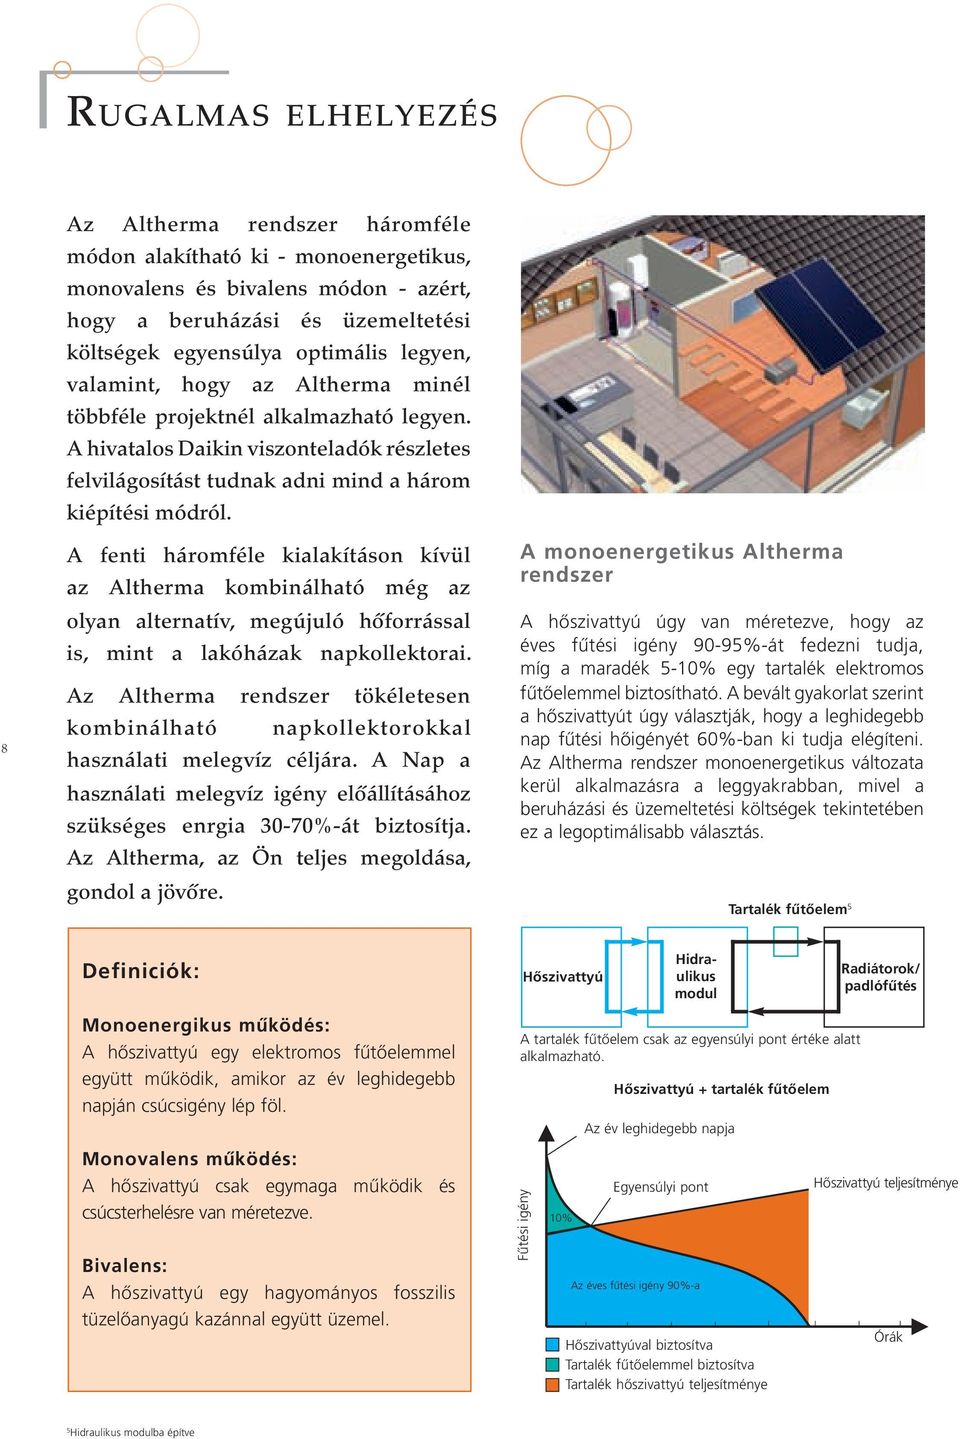 A fenti háromféle kialakításon kívül az Altherma kombinálható még az olyan alternatív, megújuló hőforrással is, mint a lakóházak napkollektorai.